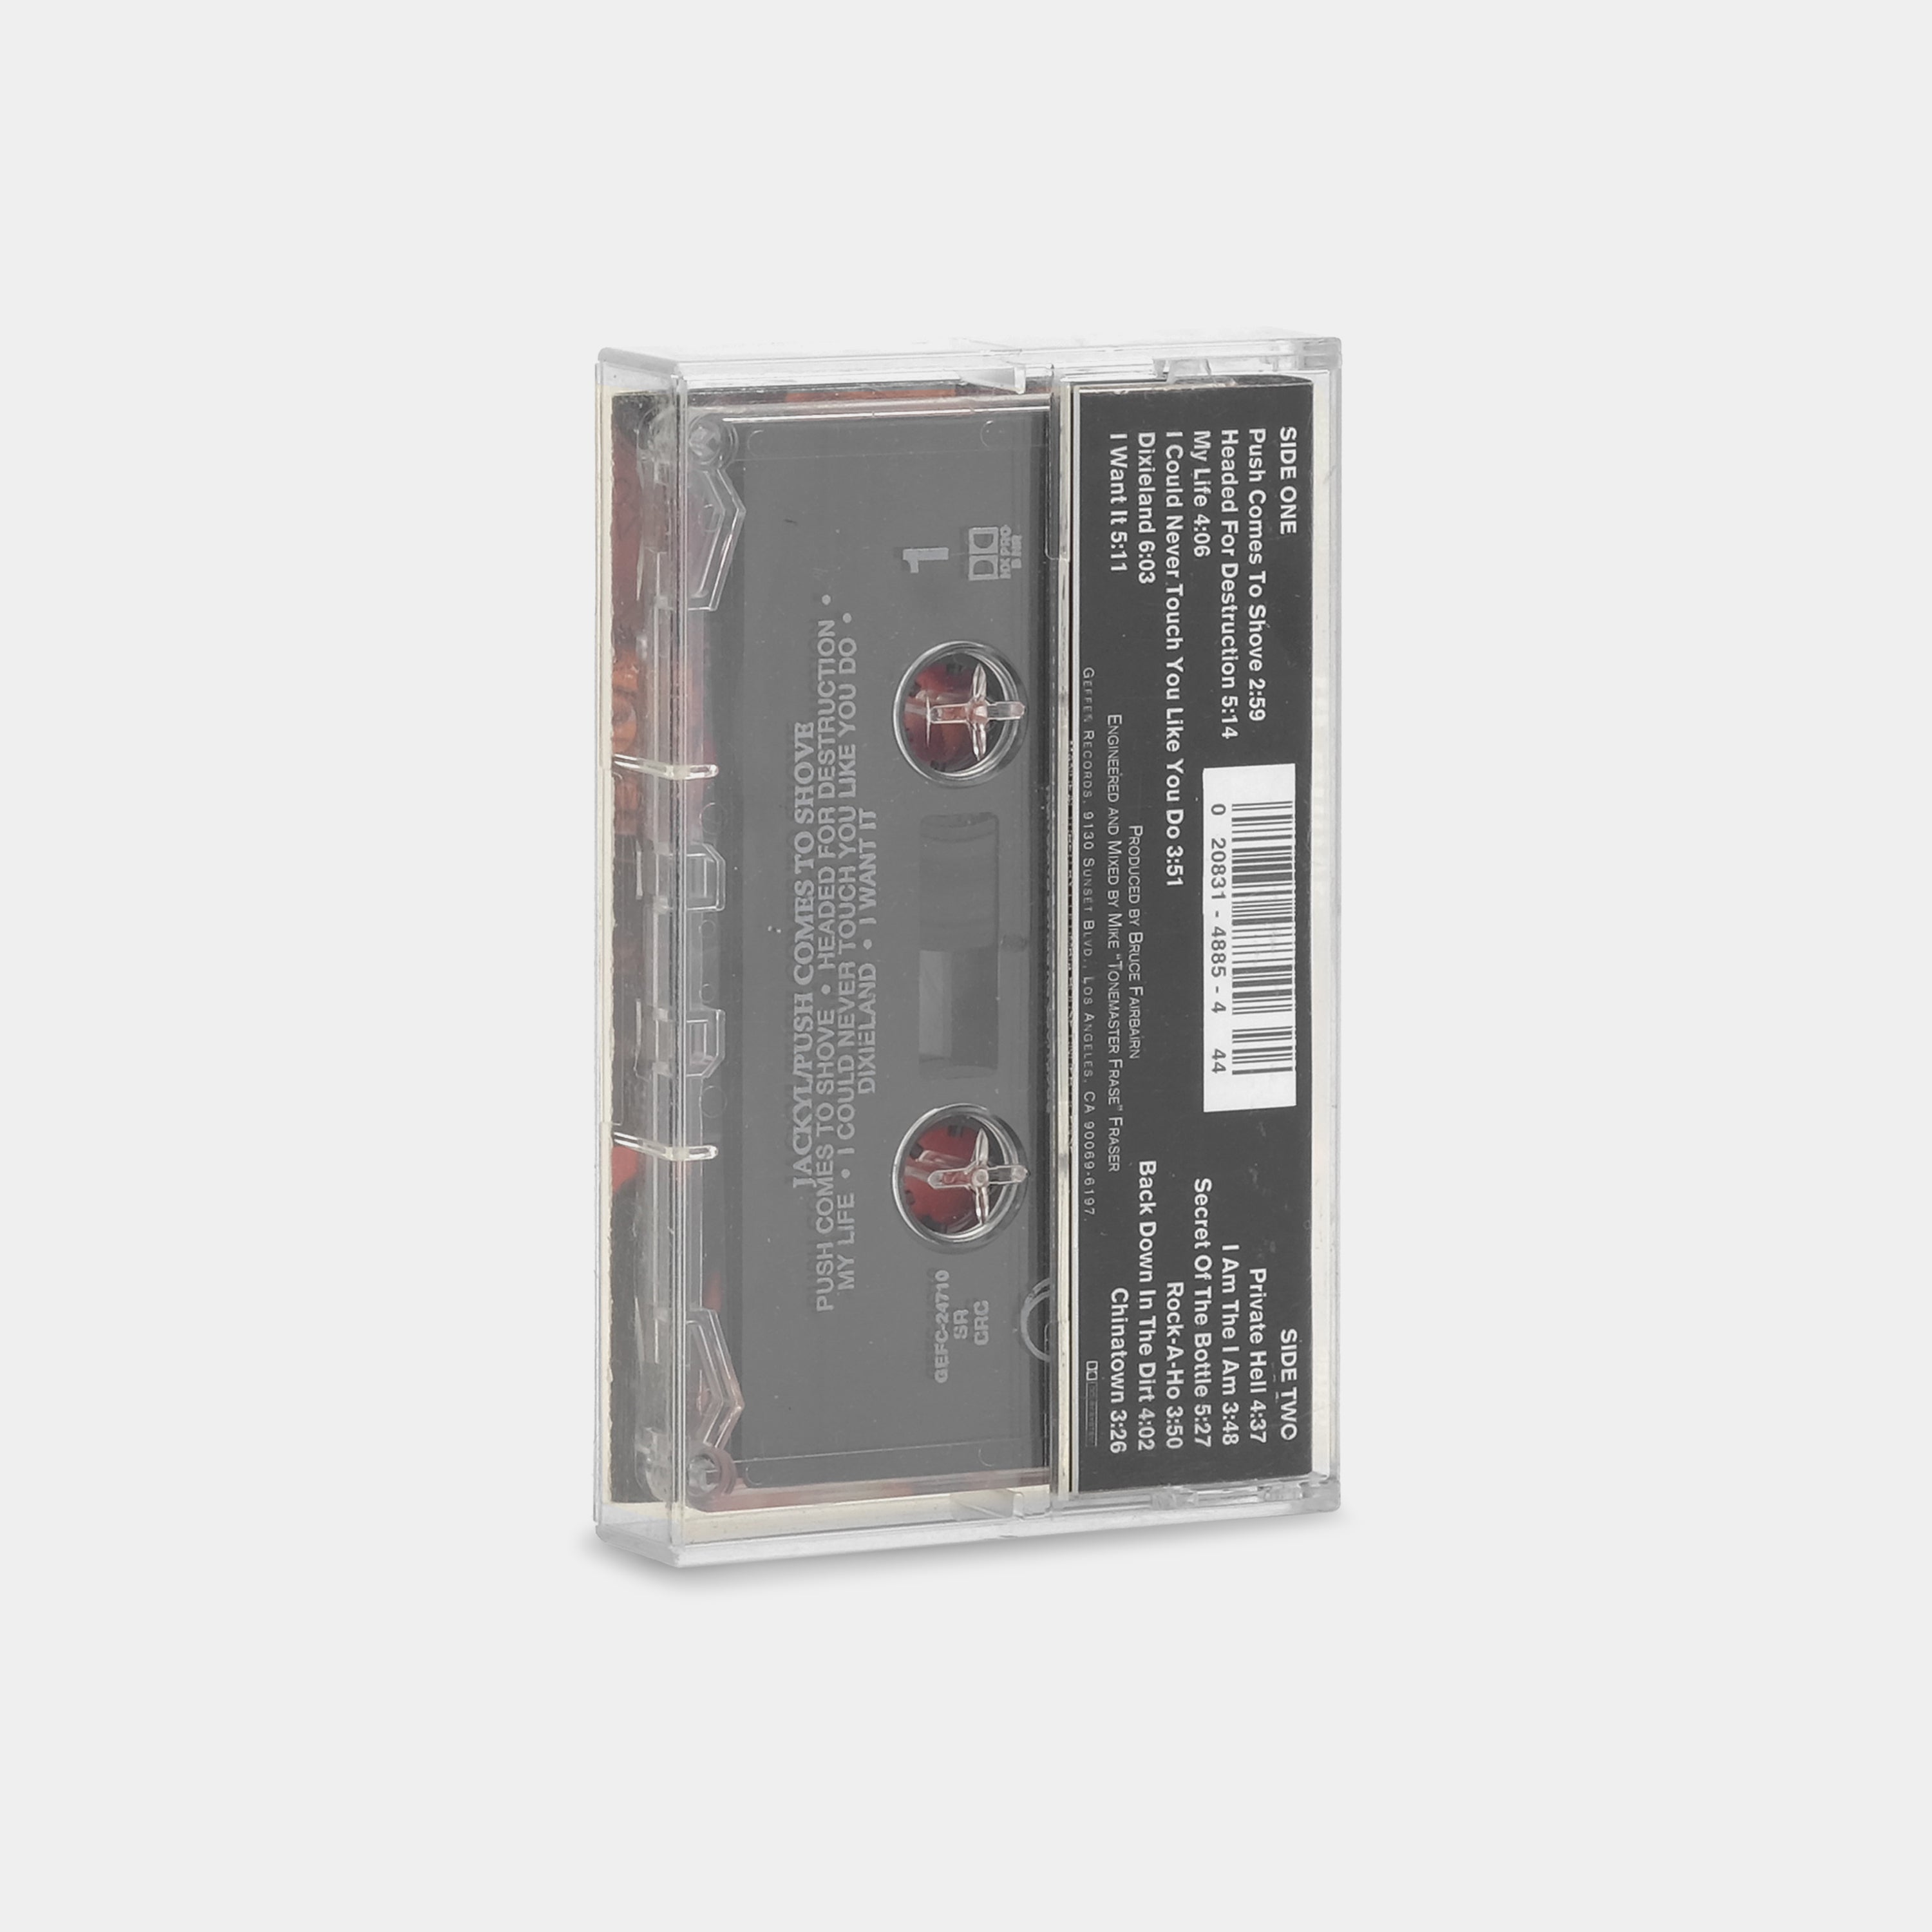 Jackyl - Push Comes To Shove Cassette Tape